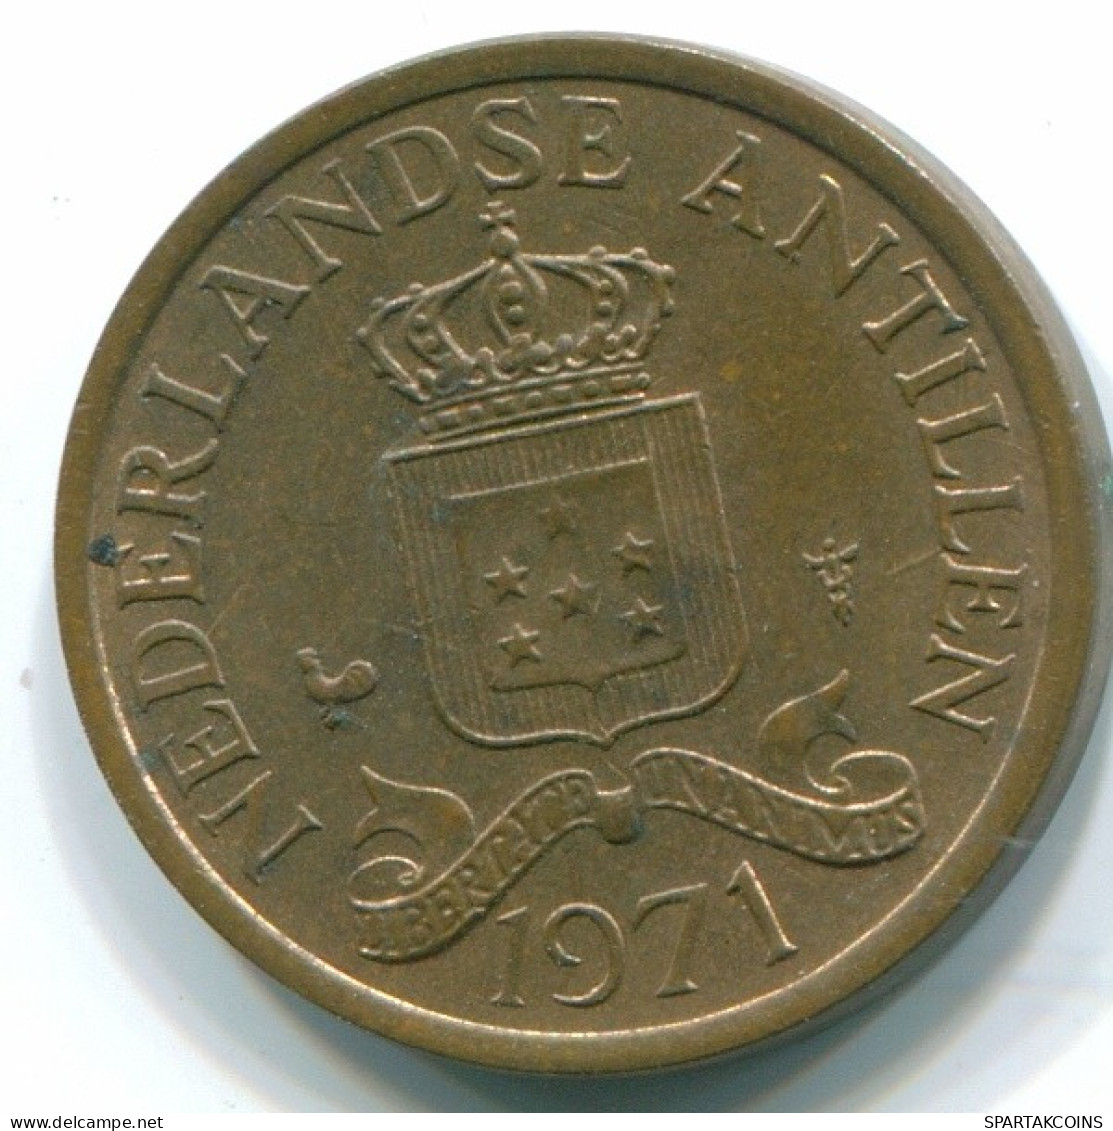 1 CENT 1971 NIEDERLÄNDISCHE ANTILLEN Bronze Koloniale Münze #S10608.D.A - Antillas Neerlandesas